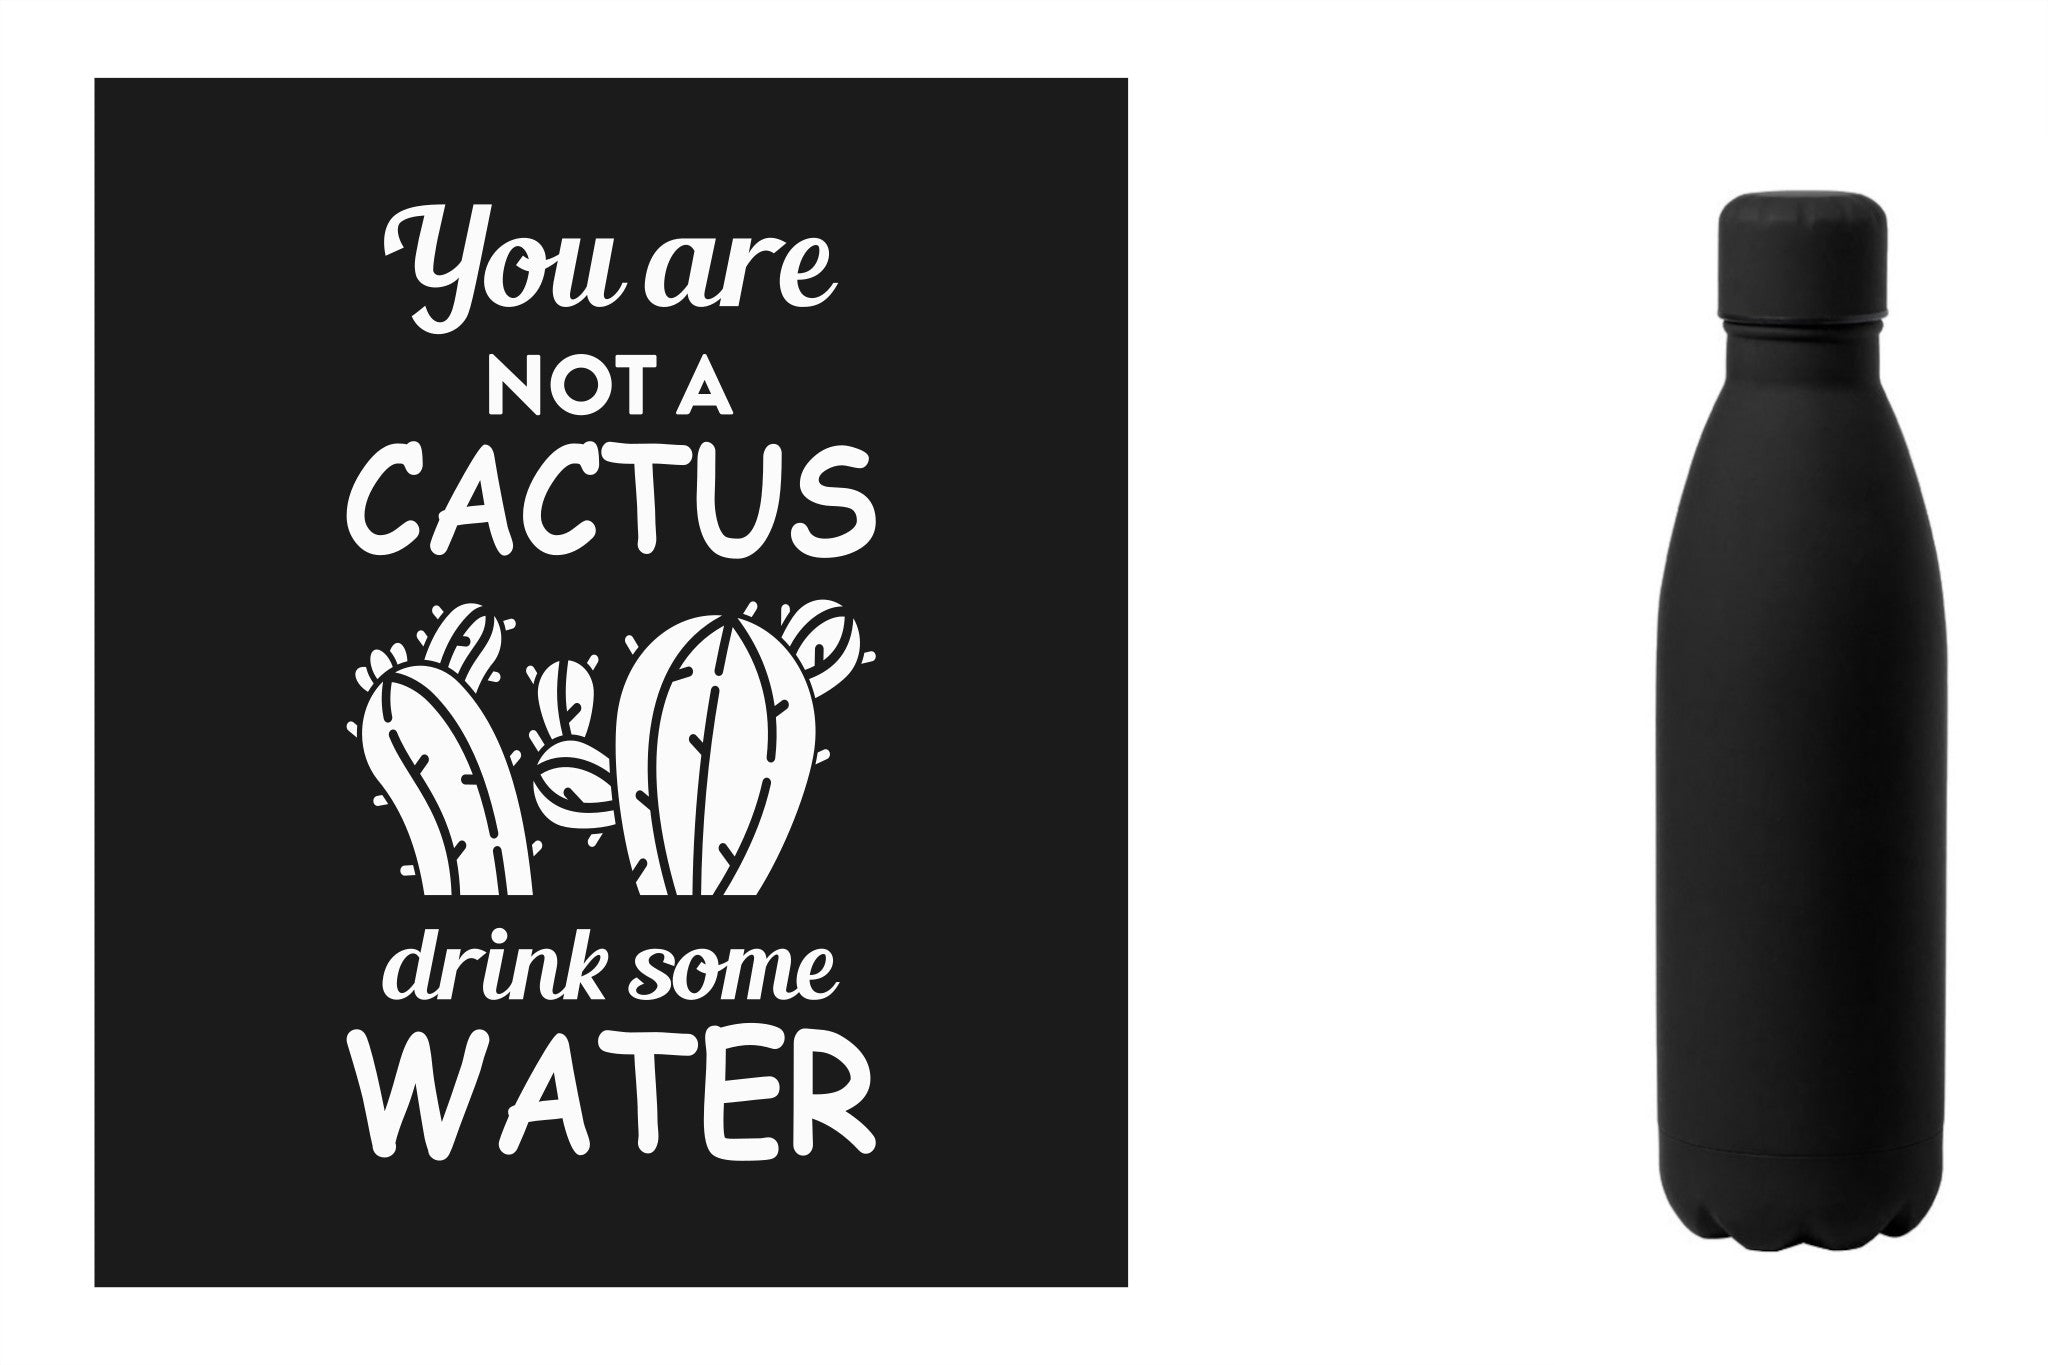 Metalen drinkfles, onbreekbare waterfles, aluminium drinkfles, hydratatiefles, fles van RVS, roesvrijstalen watercontainer met water quote 'You are not a cactus, drink some water' kleur zwart.